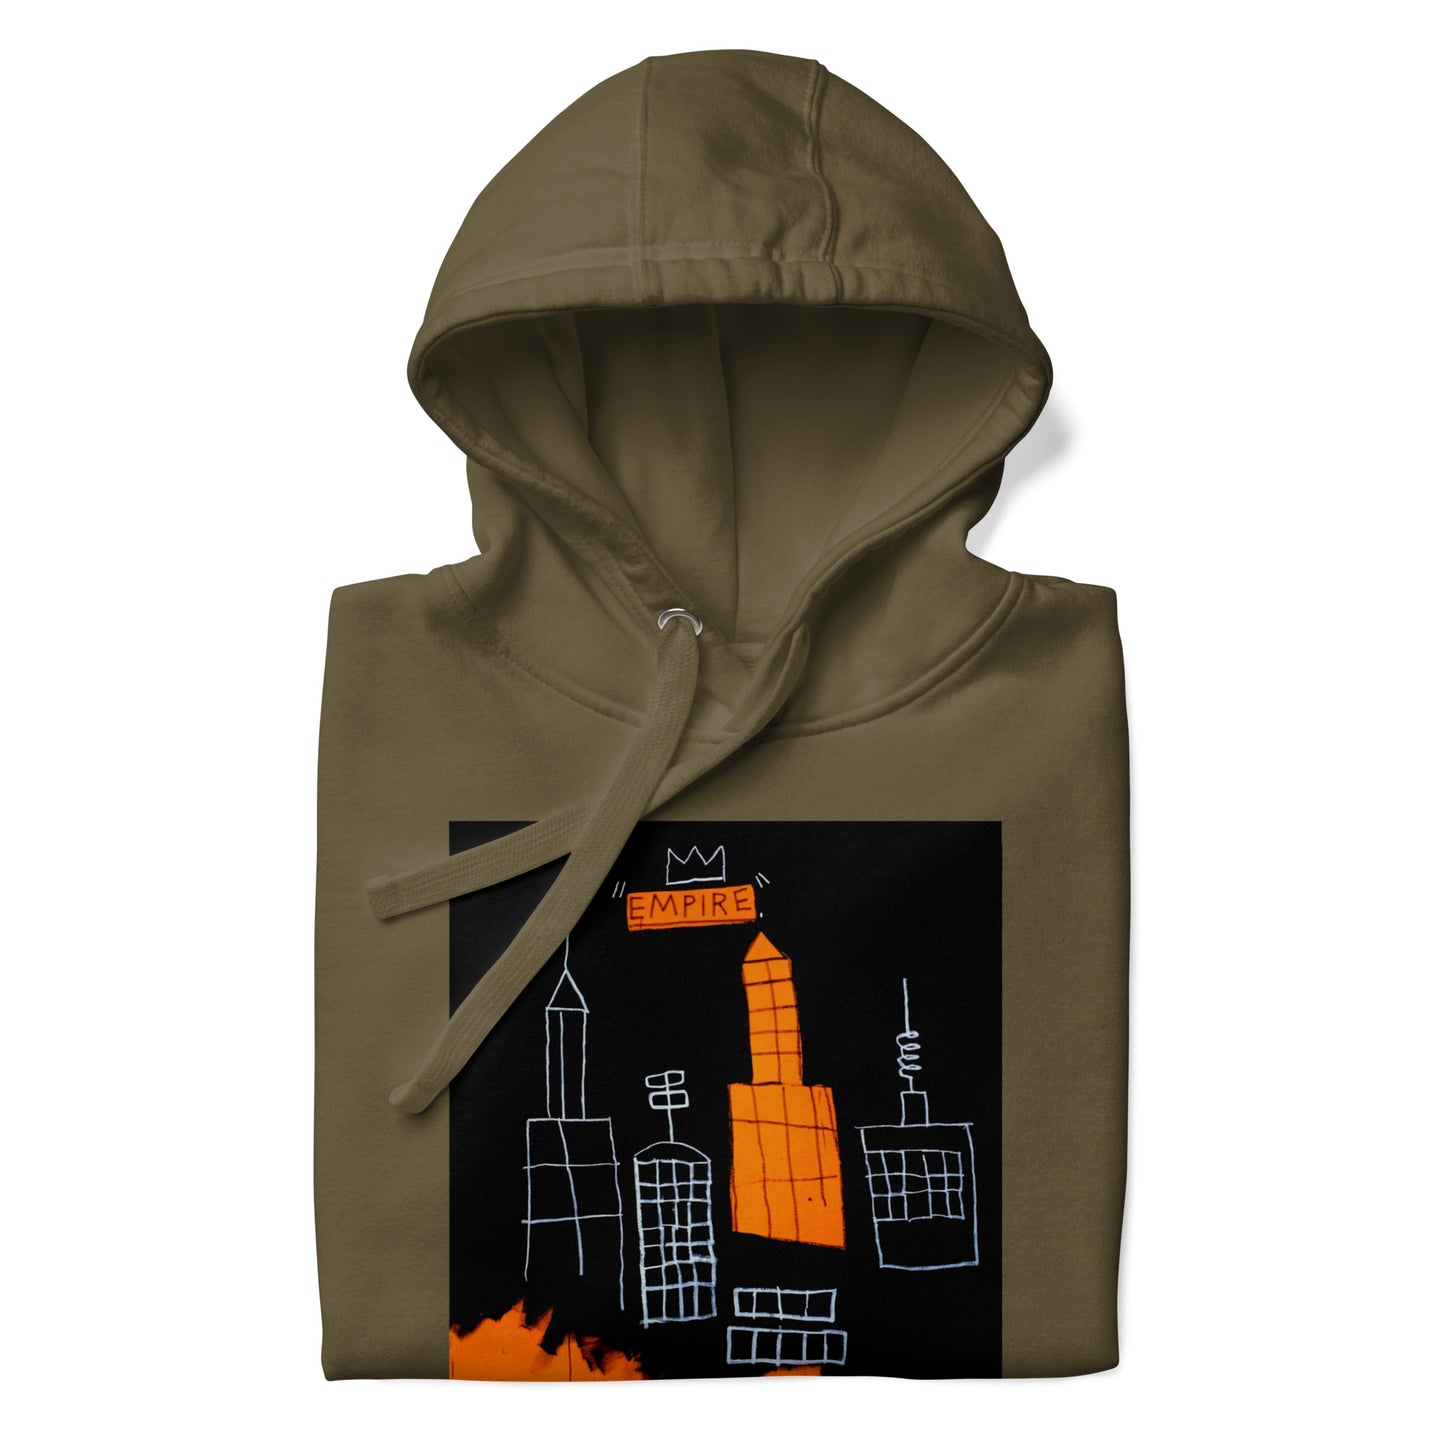 Jean-Michel Basquiat "Mecca" Artwork Printed Premium Streetwear Sweatshirt Hoodie Olive Green